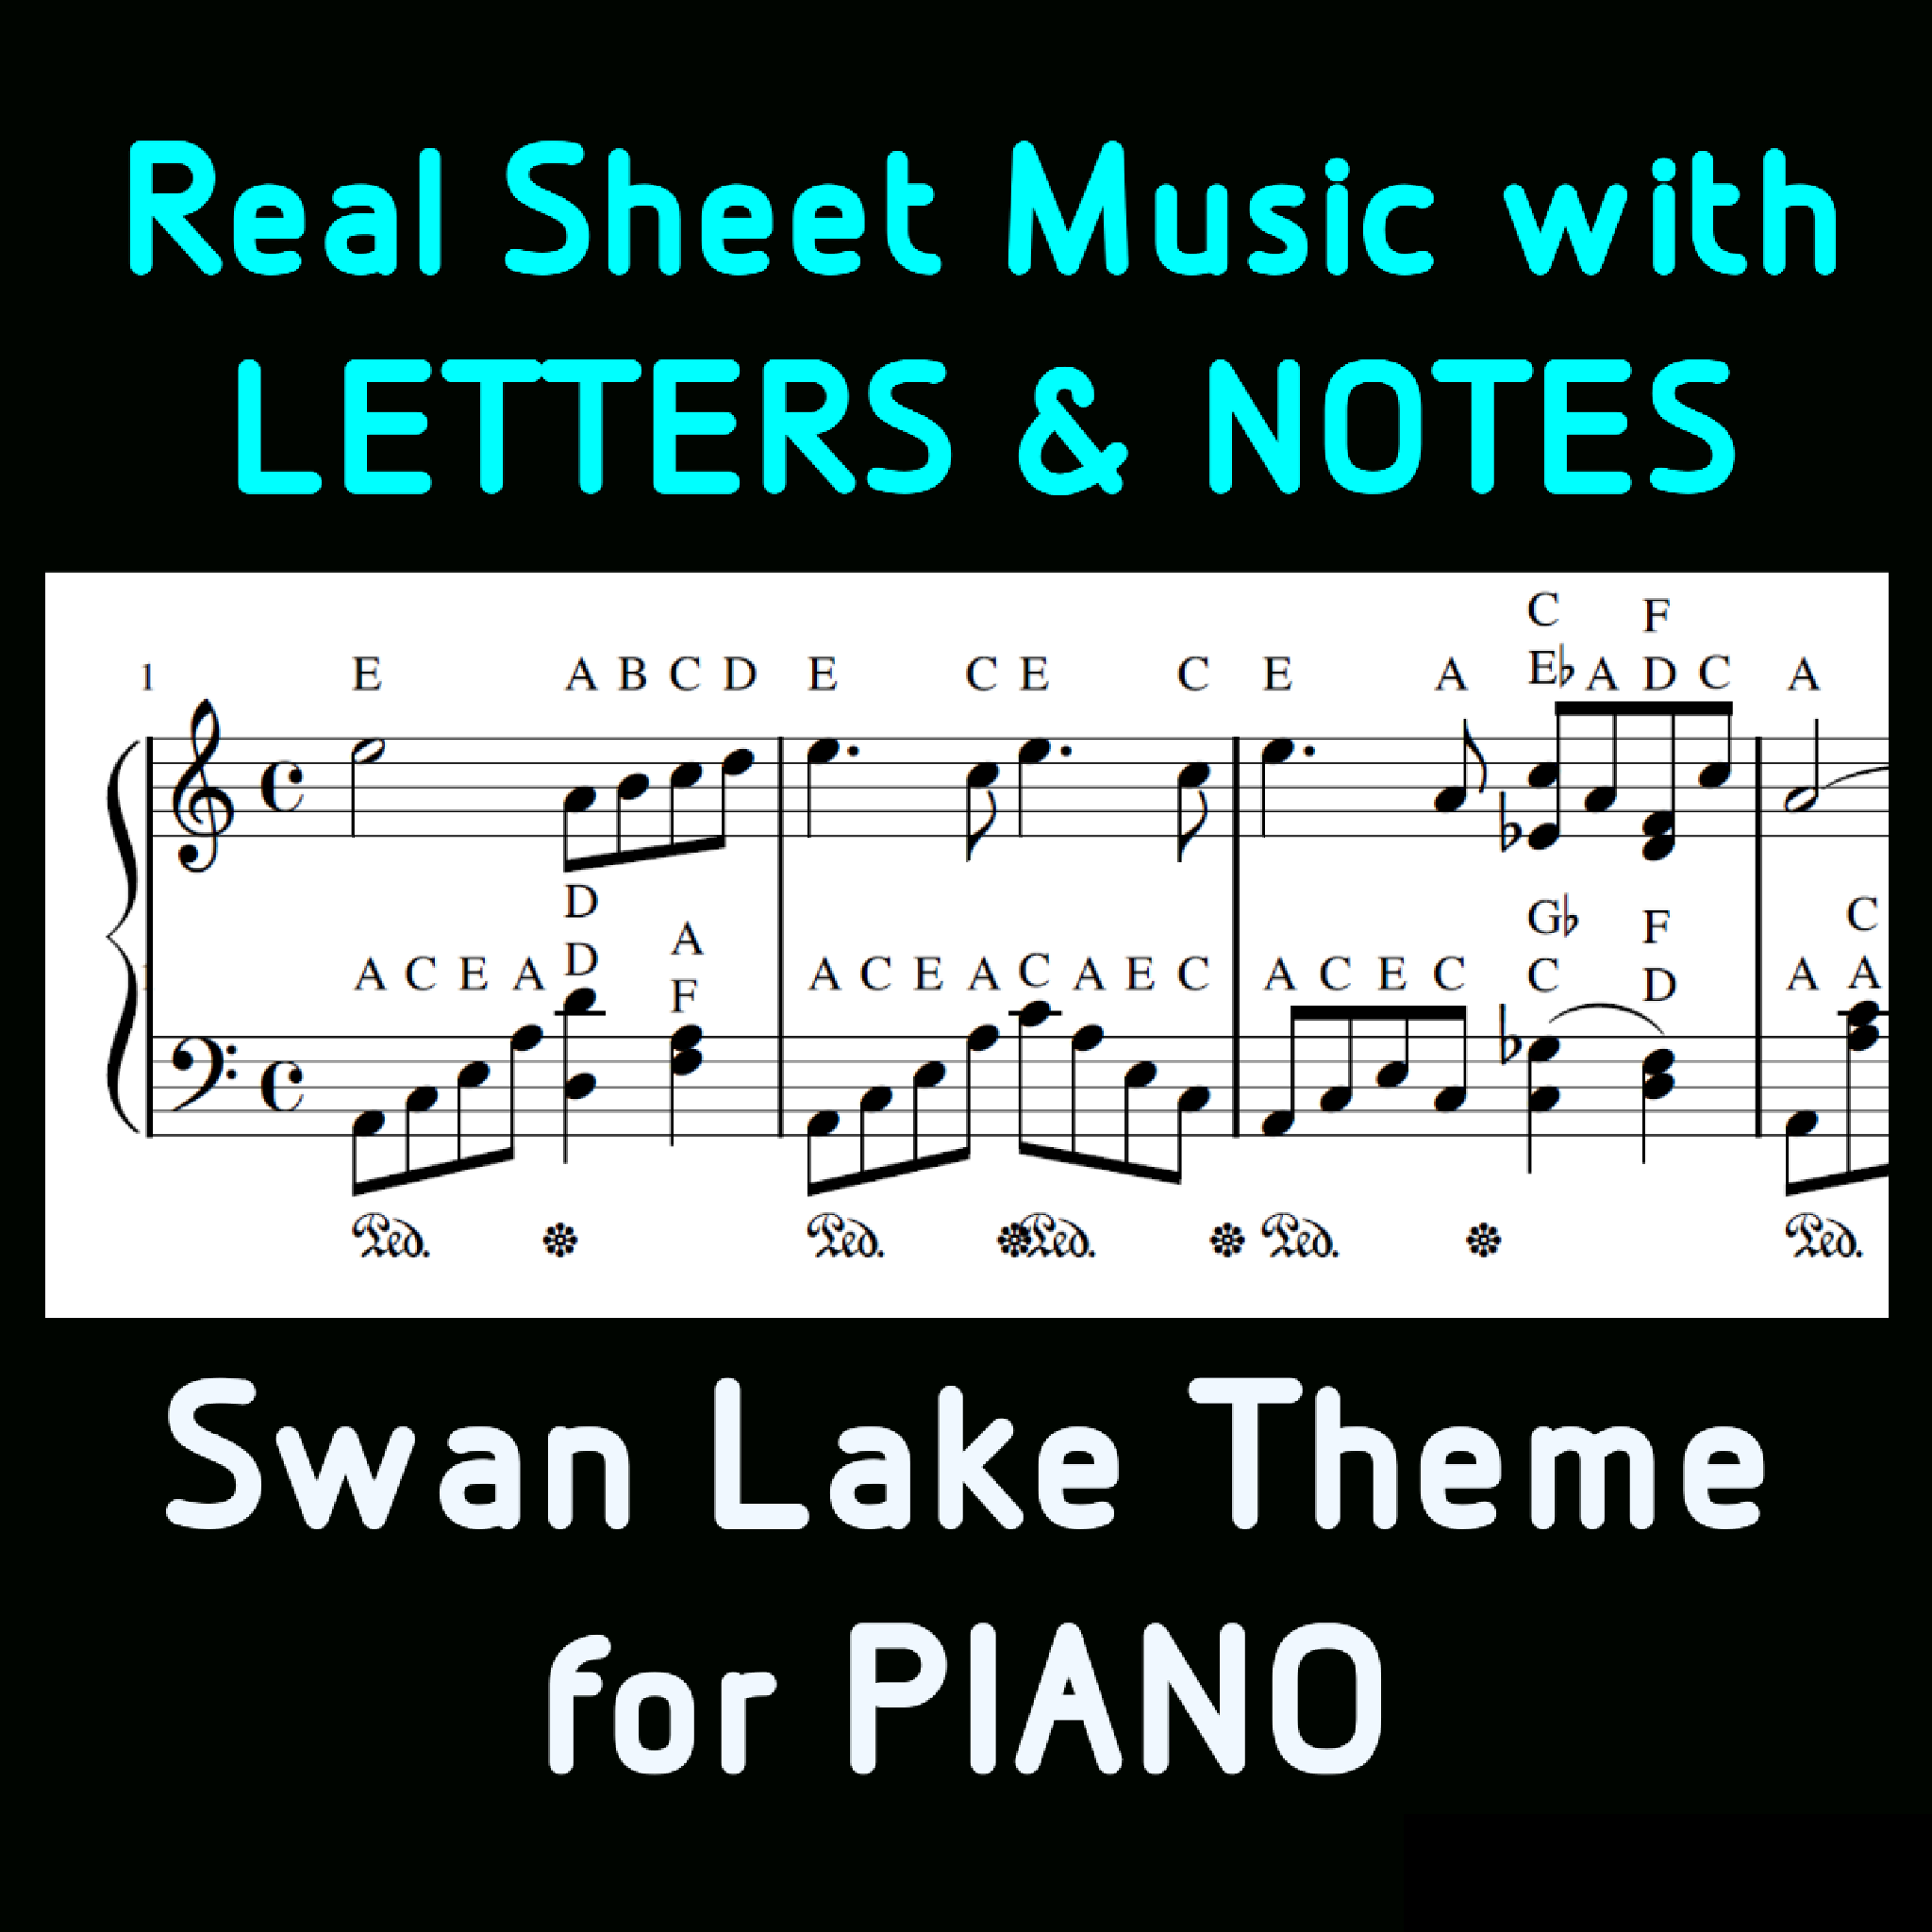 Thème du lac des cygnes  Partition piano avec lettres et notes